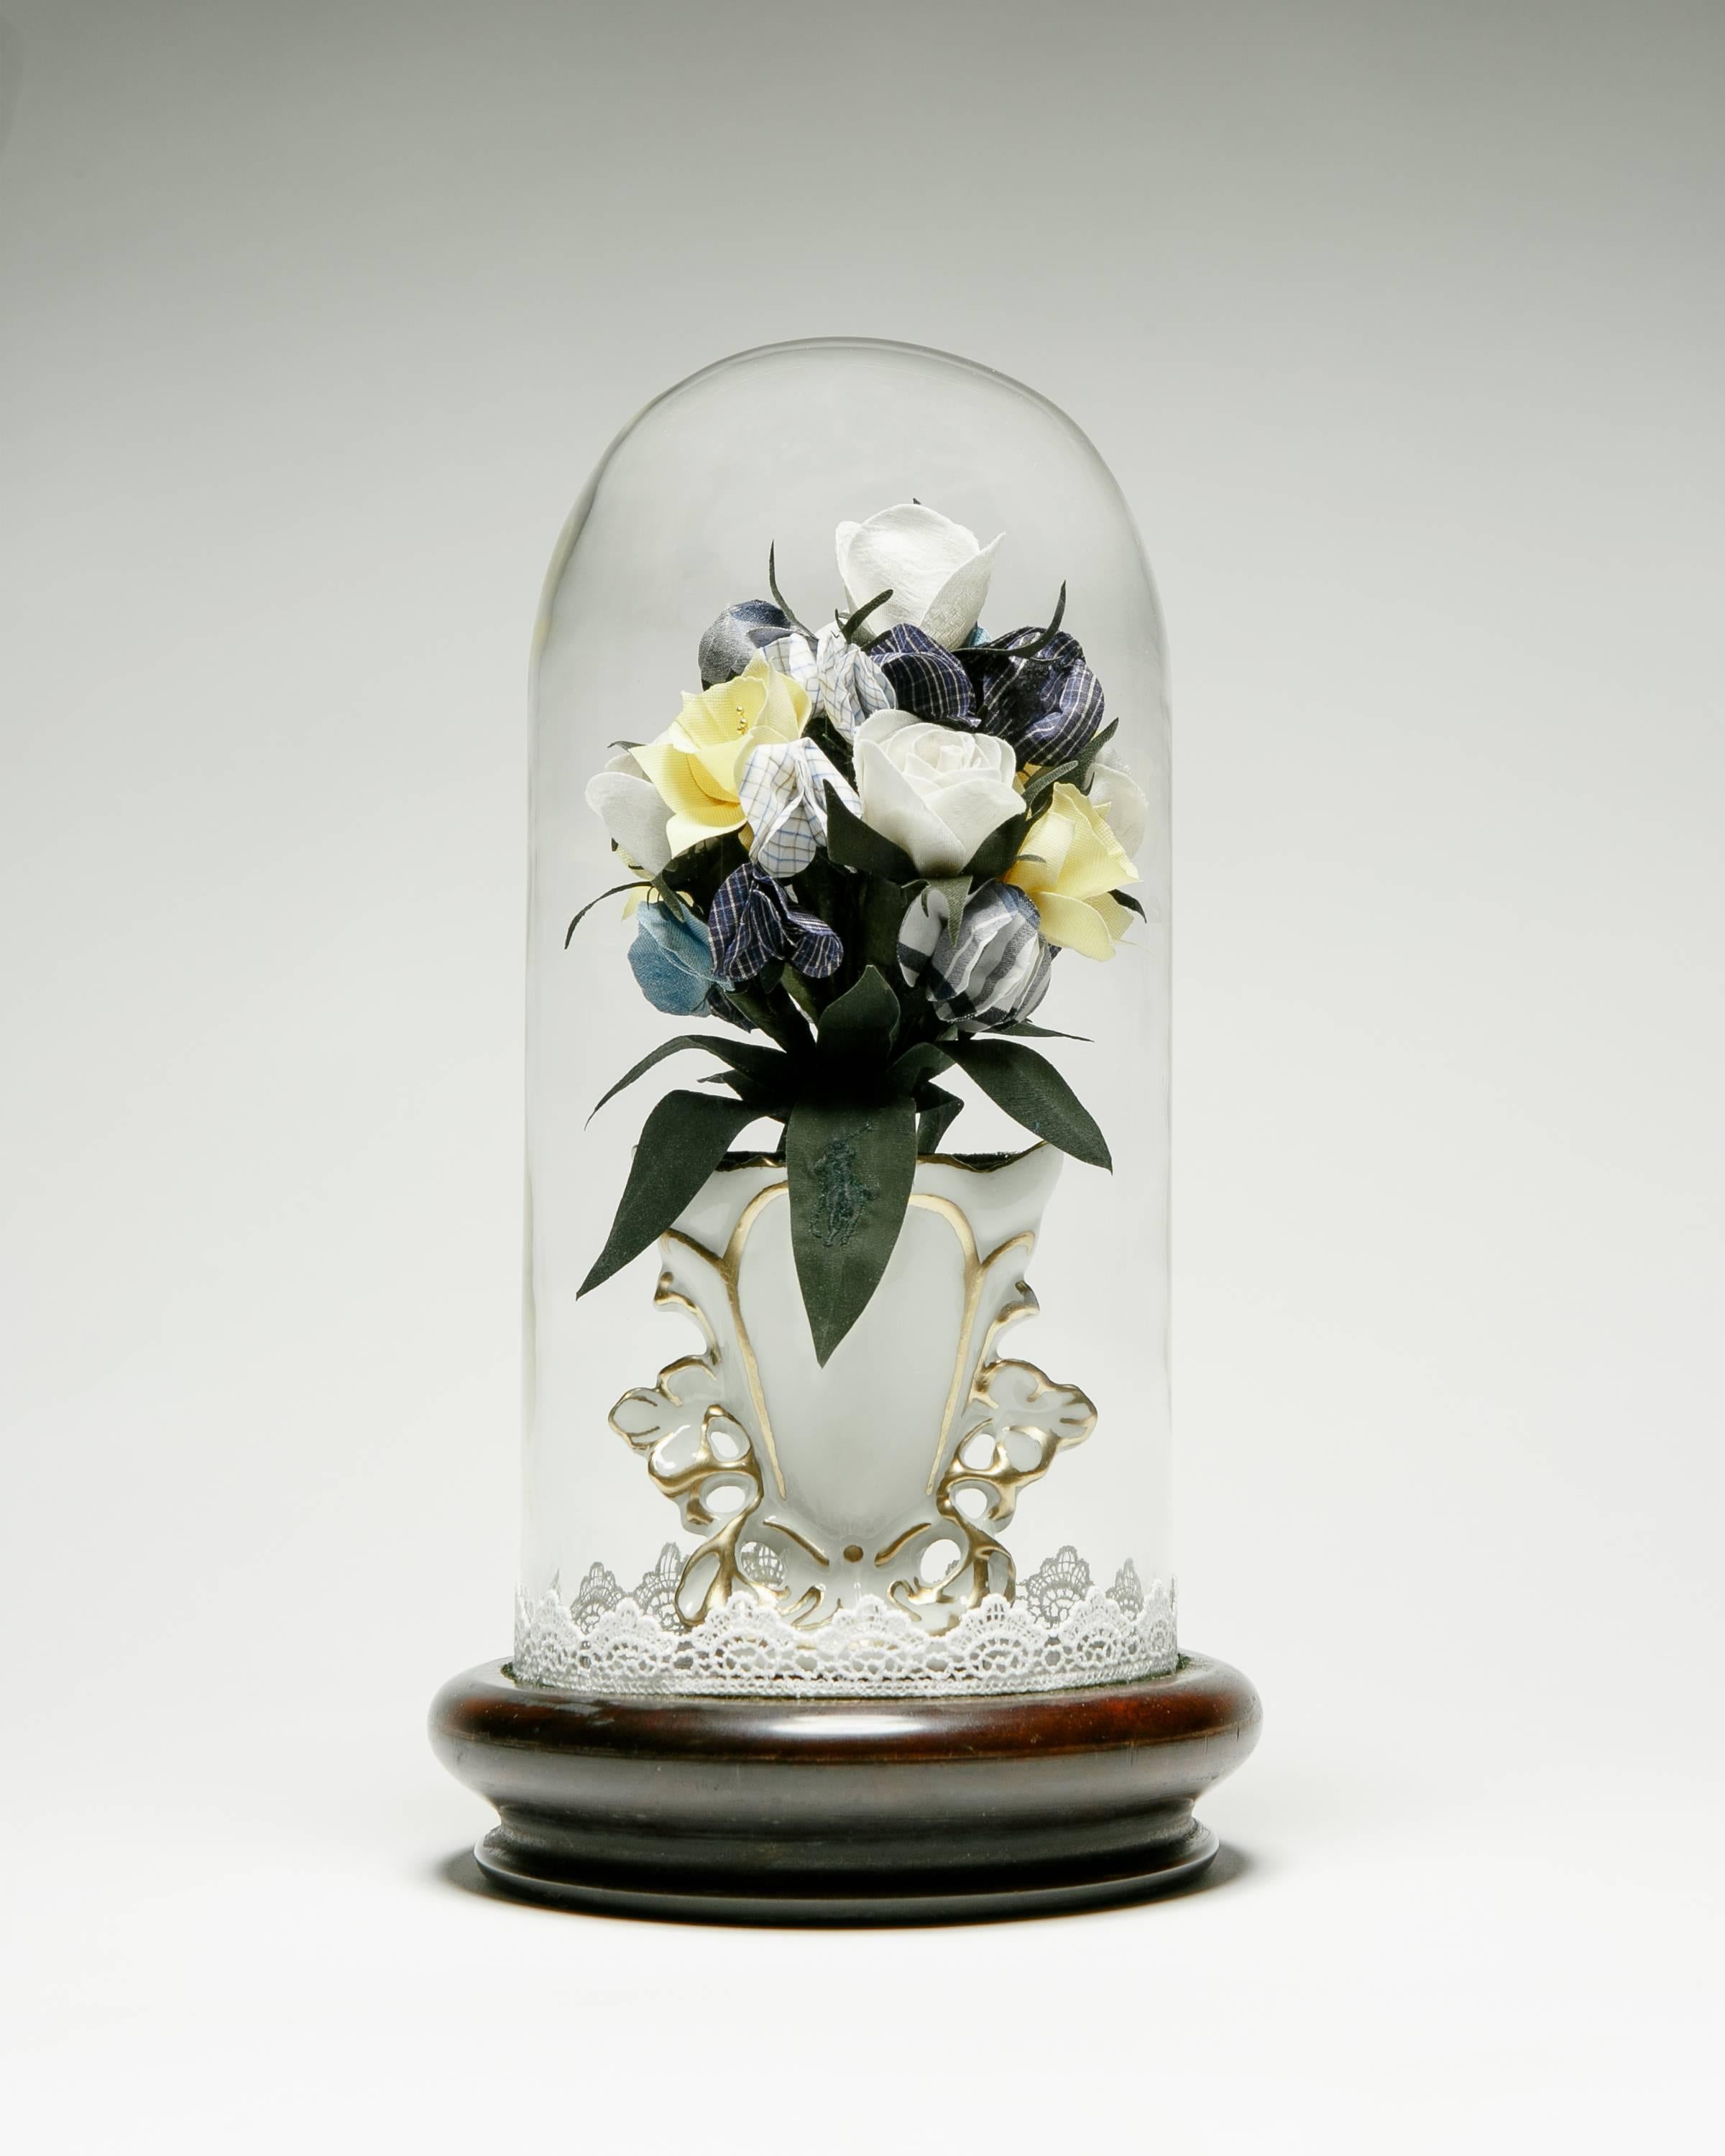  Globe de Mariée - Bouquet Nosegay - Mixed Media Art de Carlton Scott Sturgill